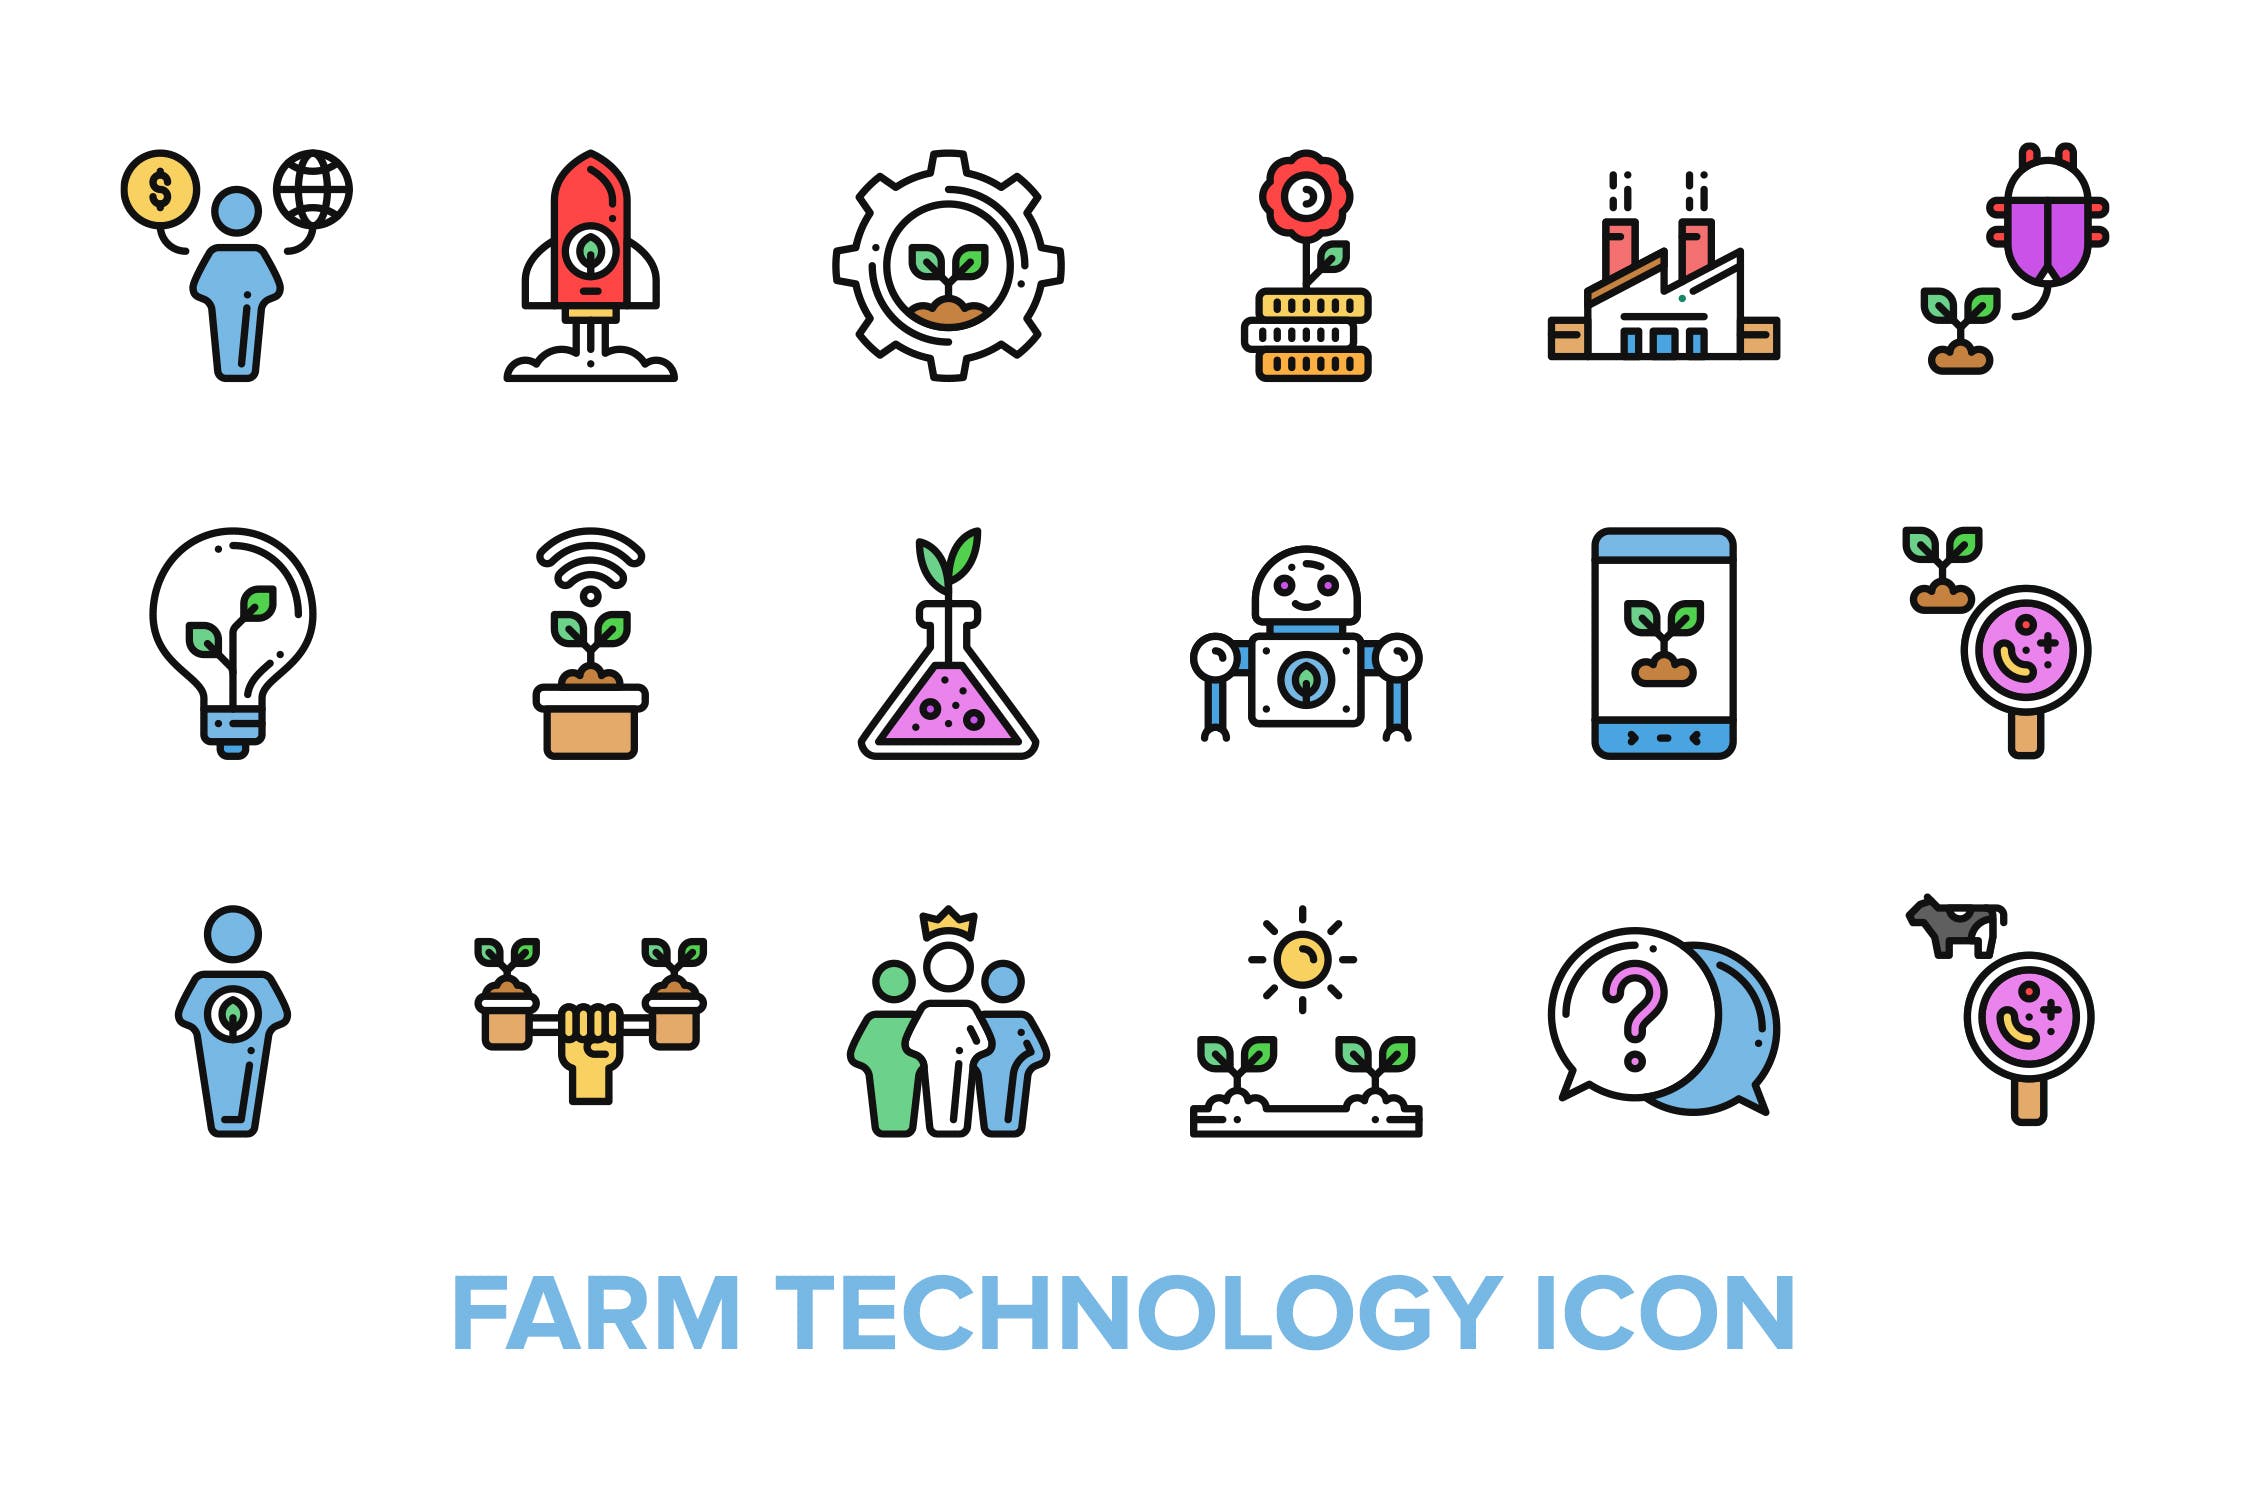 现代化农场技术彩色概念图标矢量图标素材 Farm Technology Icon插图